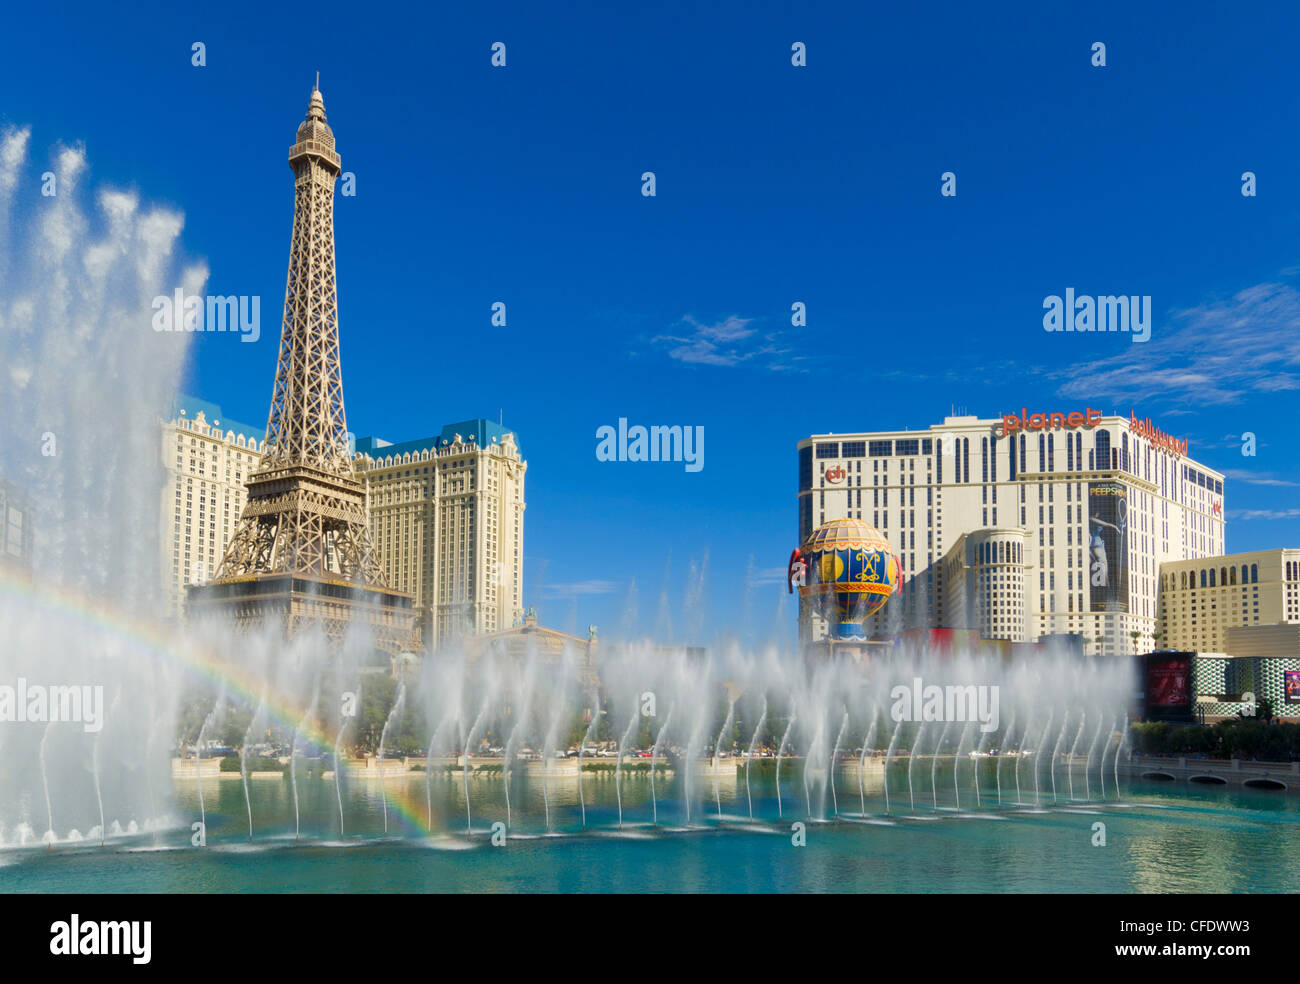 Rainbow dalle fontane danzanti del Bellagio hotel, la striscia di Las Vegas Boulevard South, Las Vegas, Nevada, STATI UNITI D'AMERICA Foto Stock